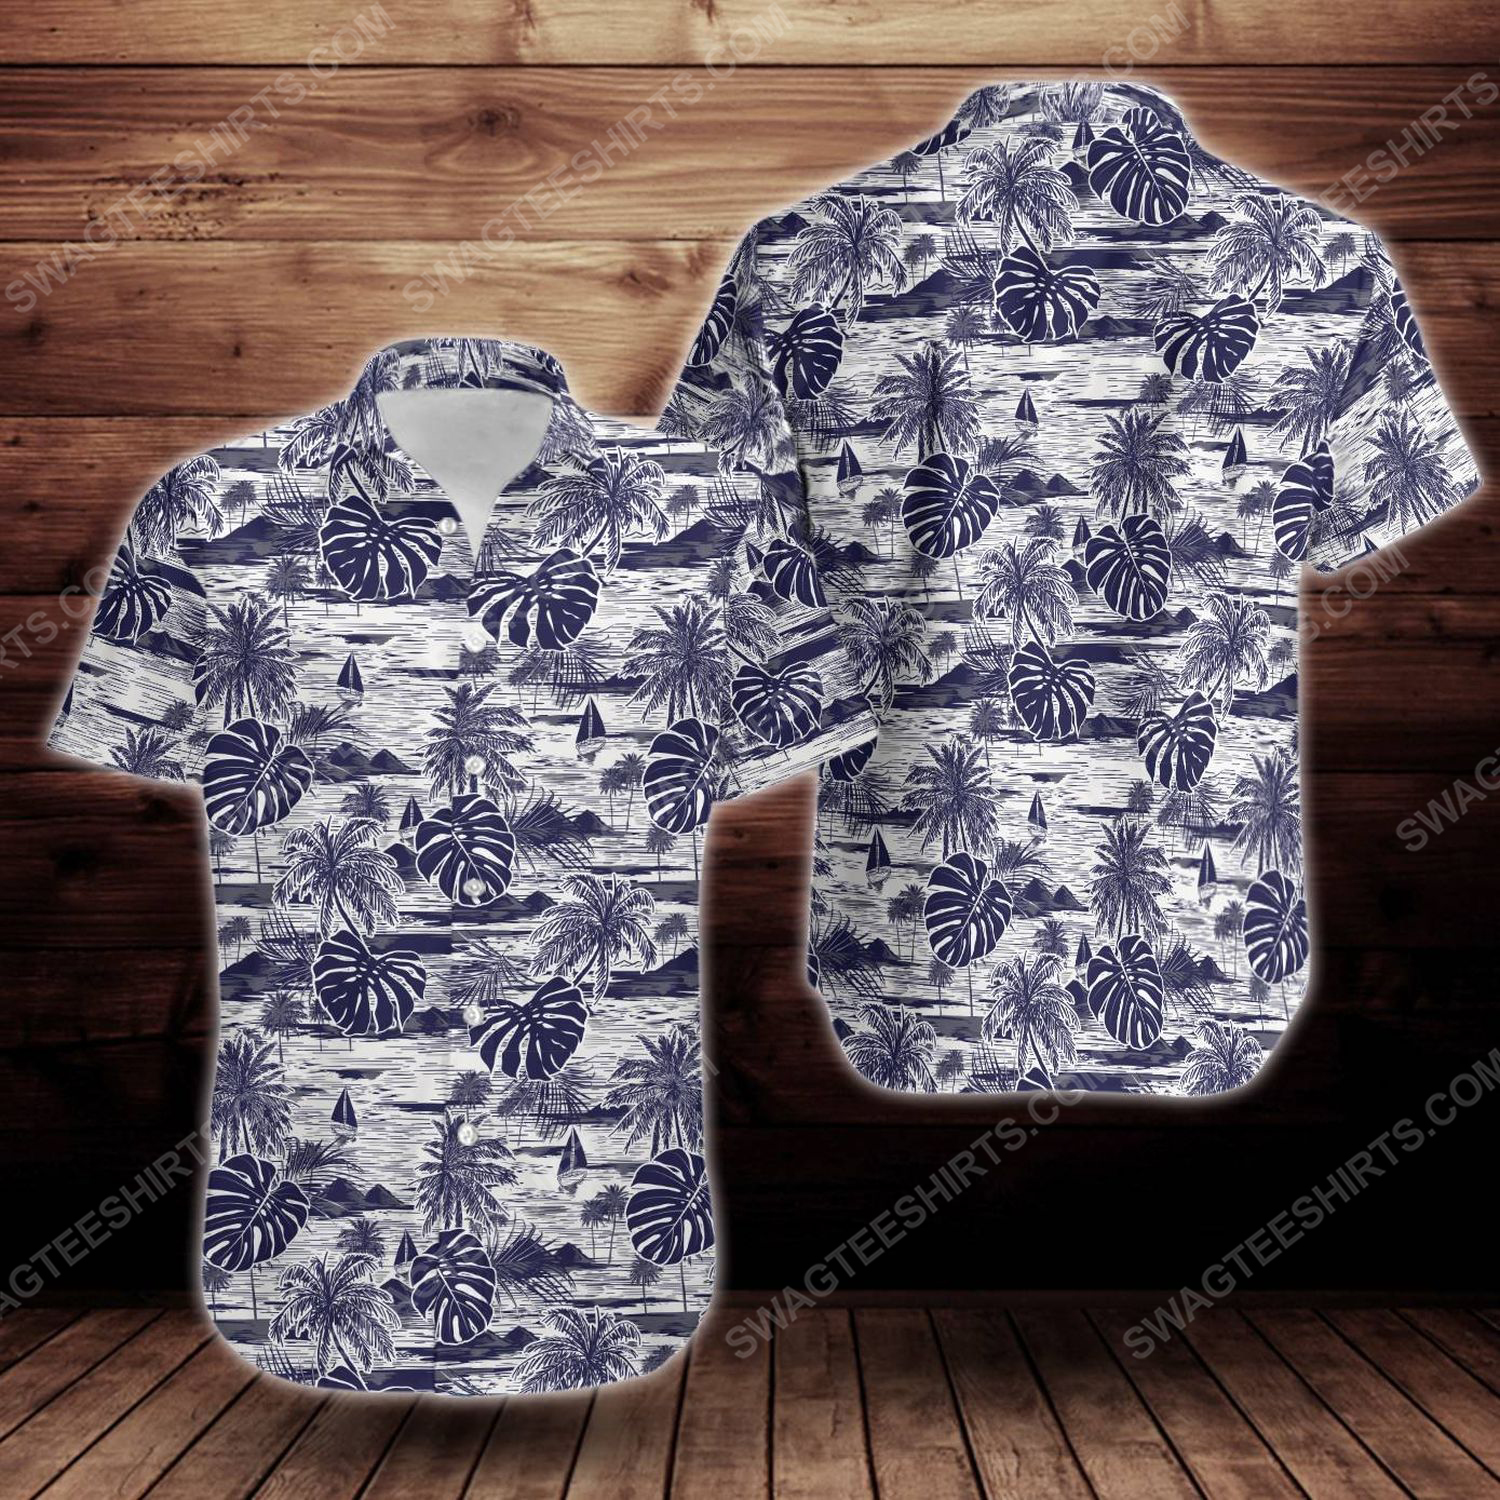 Tropical summer island short sleeve hawaiian shirt 1